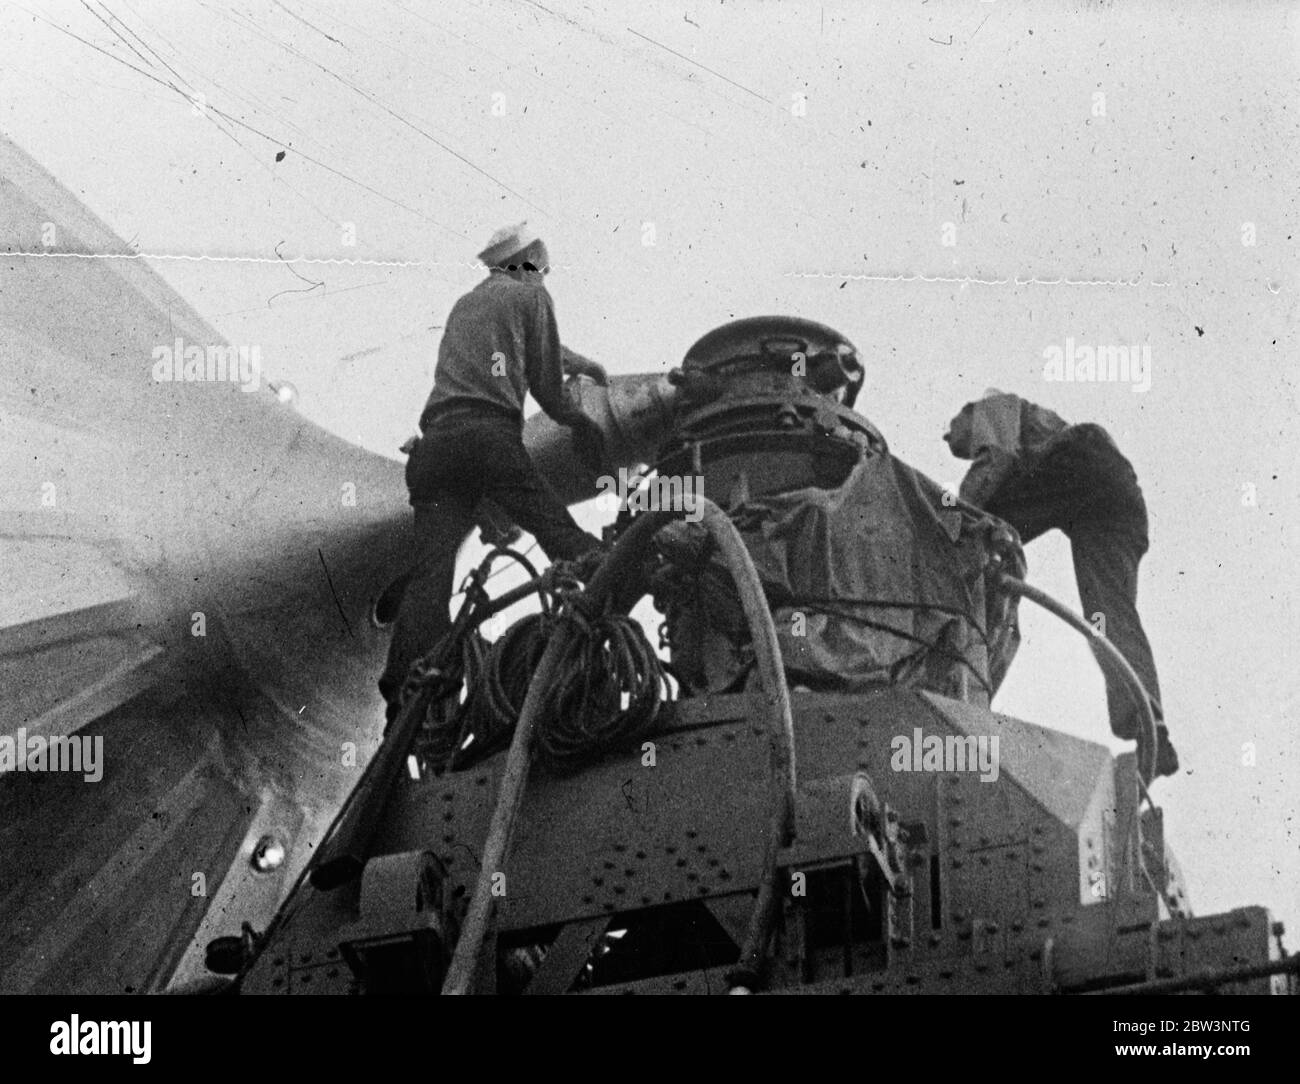 Erste Bilder von Hindenburg Ankunft in Amerika. Nach Europa mit einem riesigen Luftschiff auf Rückflug gebracht. Diese Bilder, die die Hindenburg selbst auf ihrem Rekordrückflug nach Europa zurückbrachte, sind die ersten, die in London nach ihrer Rekordjungfräuüberquerung des Nordatlantiks in Lakehurst, New Jersey, aufgenommen wurden. Hindenburg überquerte in 69 Stunden nach Amerika und absolvierte den Rückflug in Rekordzeit mit einer Durchschnittsgeschwindigkeit von 78 Meilen pro Stunde. Der Atlantik wurde in 29 Stunden 22 Minuten überquert. Diese Bilder stammen von der Goumont British fil Stockfoto